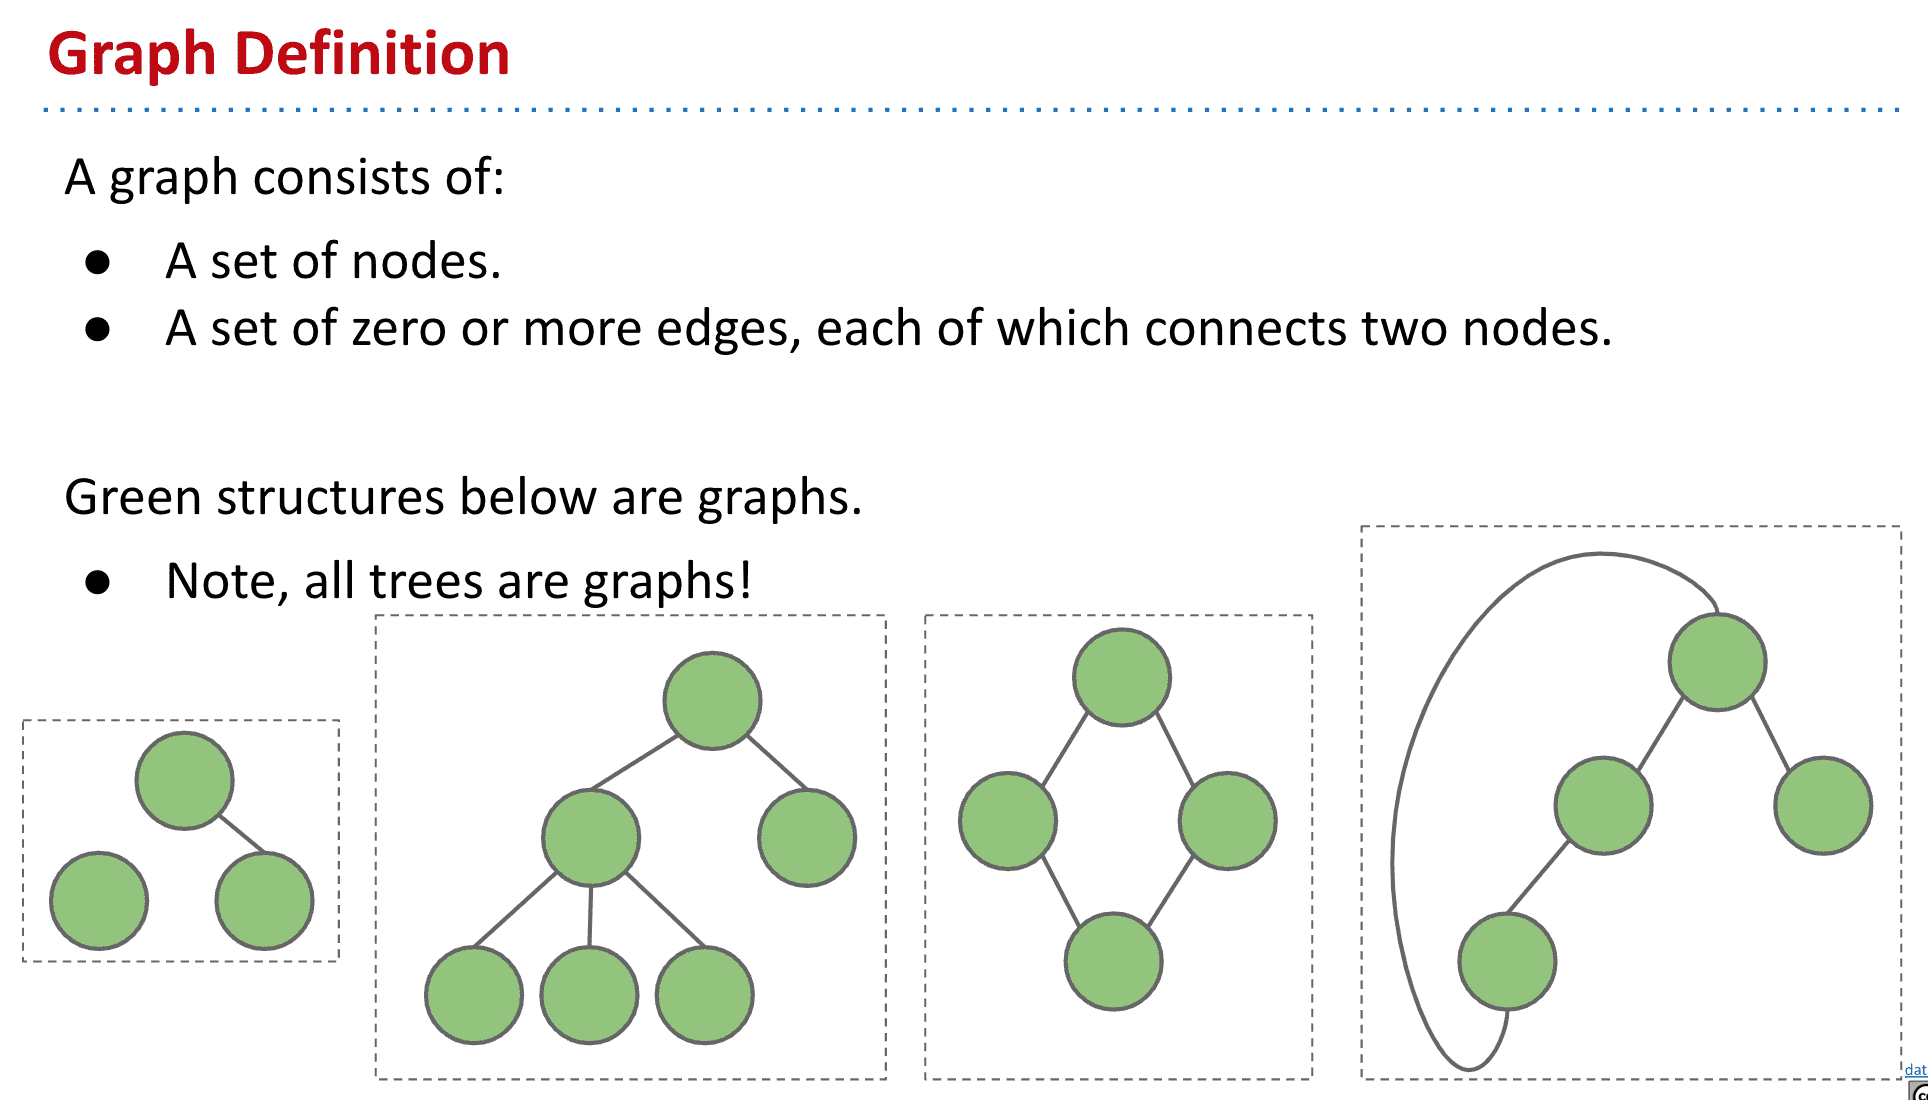 图2是树,并且所以树都属于图